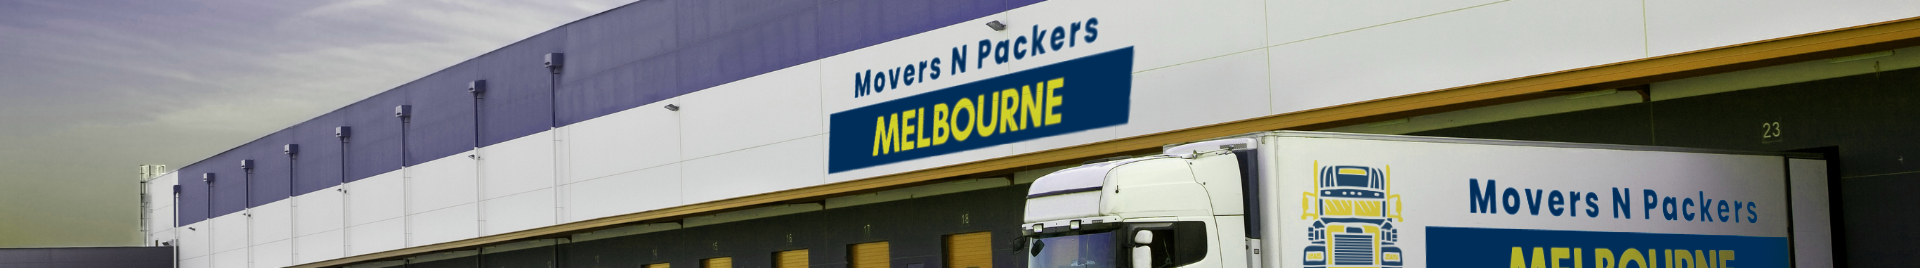 Баннер профиля Movers N Packers Melbourne